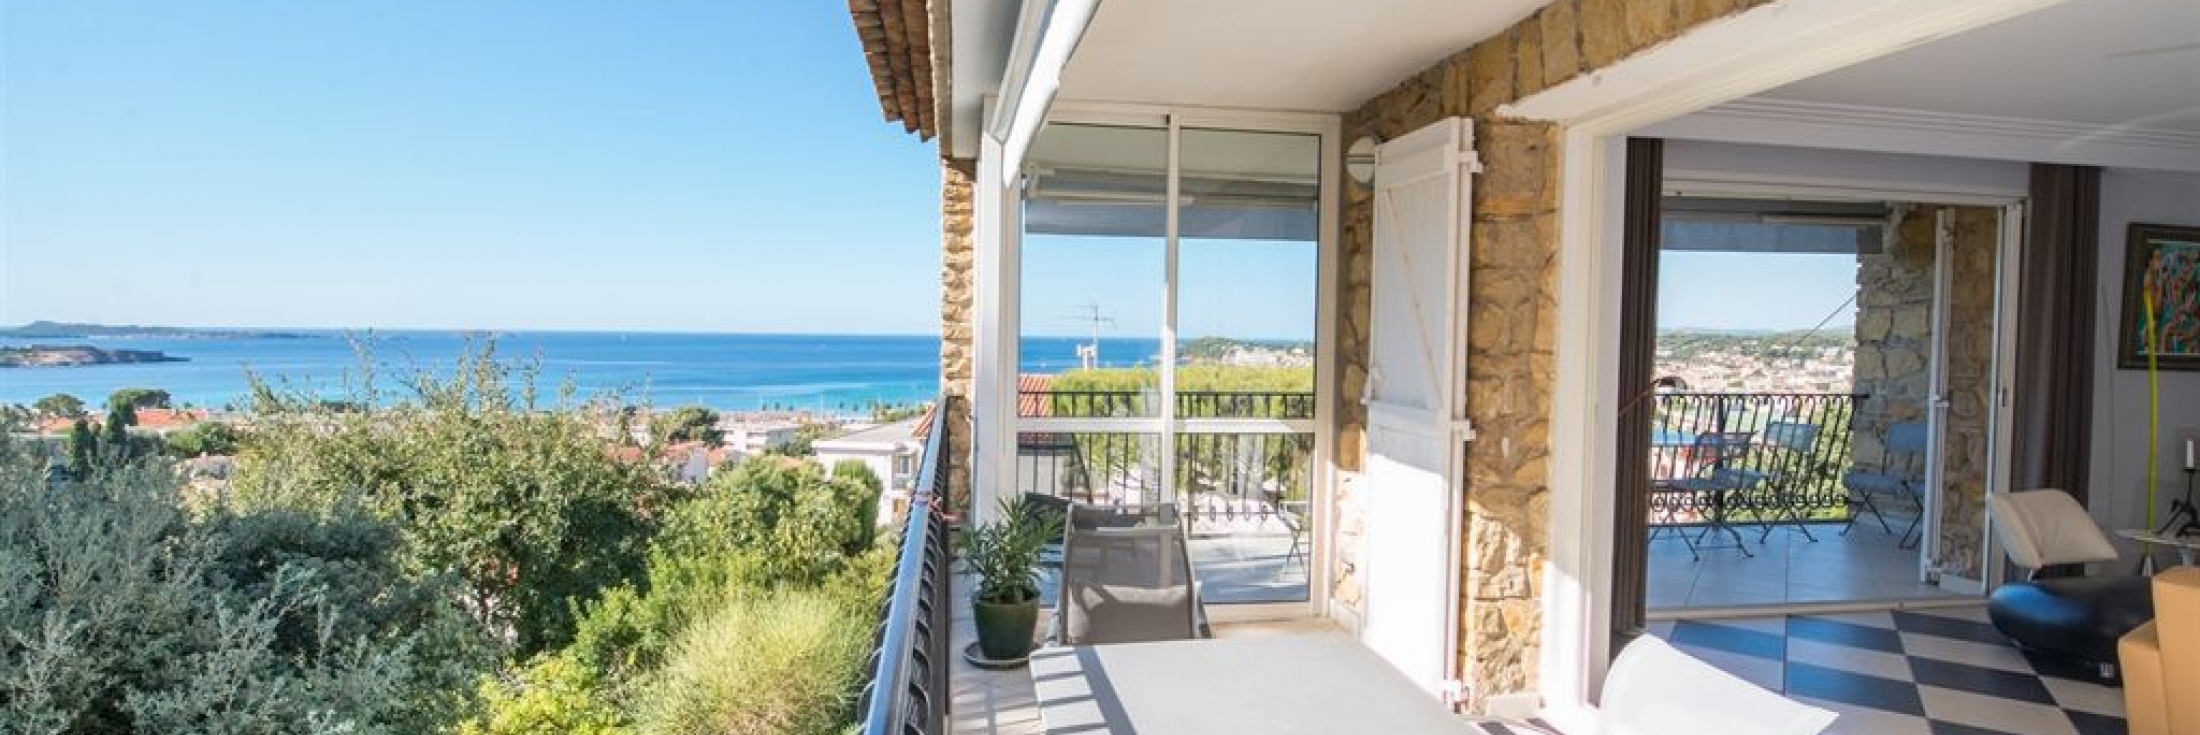 Vente villa vue mer à Six-Fours Les Lônes en deux appartements